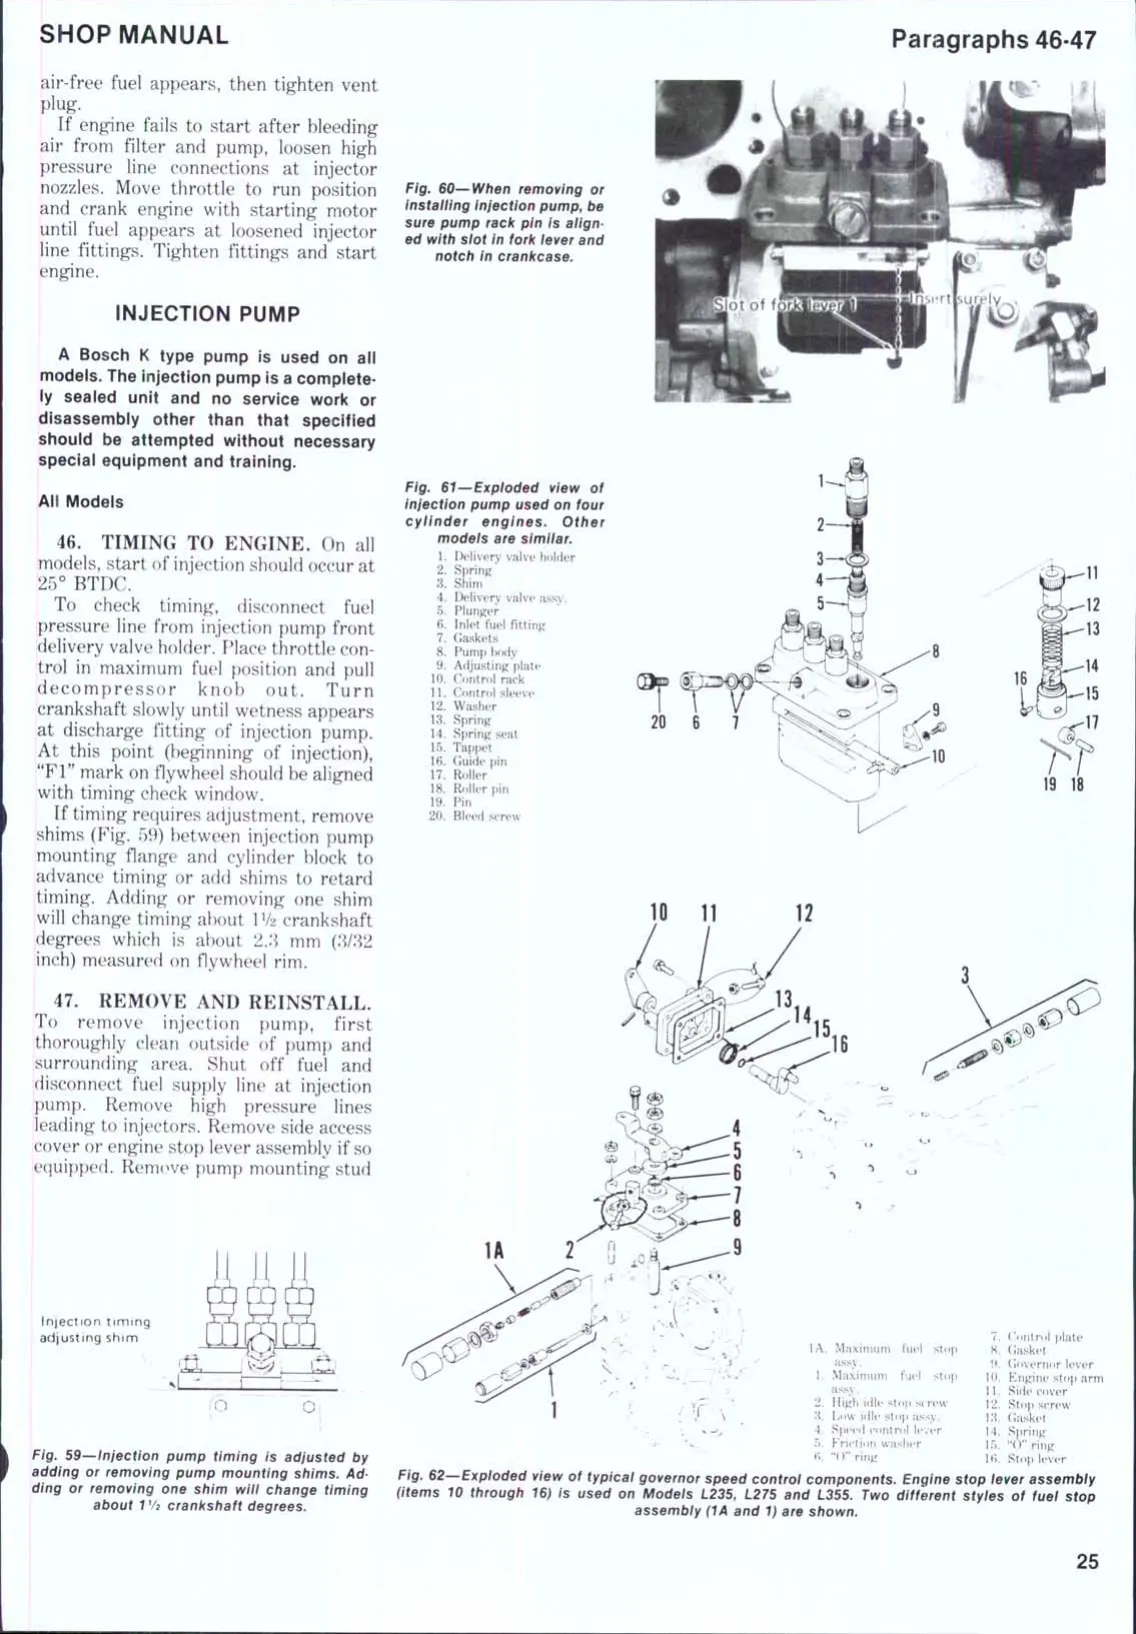 1976-1987 Kubota L185, L235, L245, L275, L285, L295, L305, L345, L355 tractor manual Preview image 2